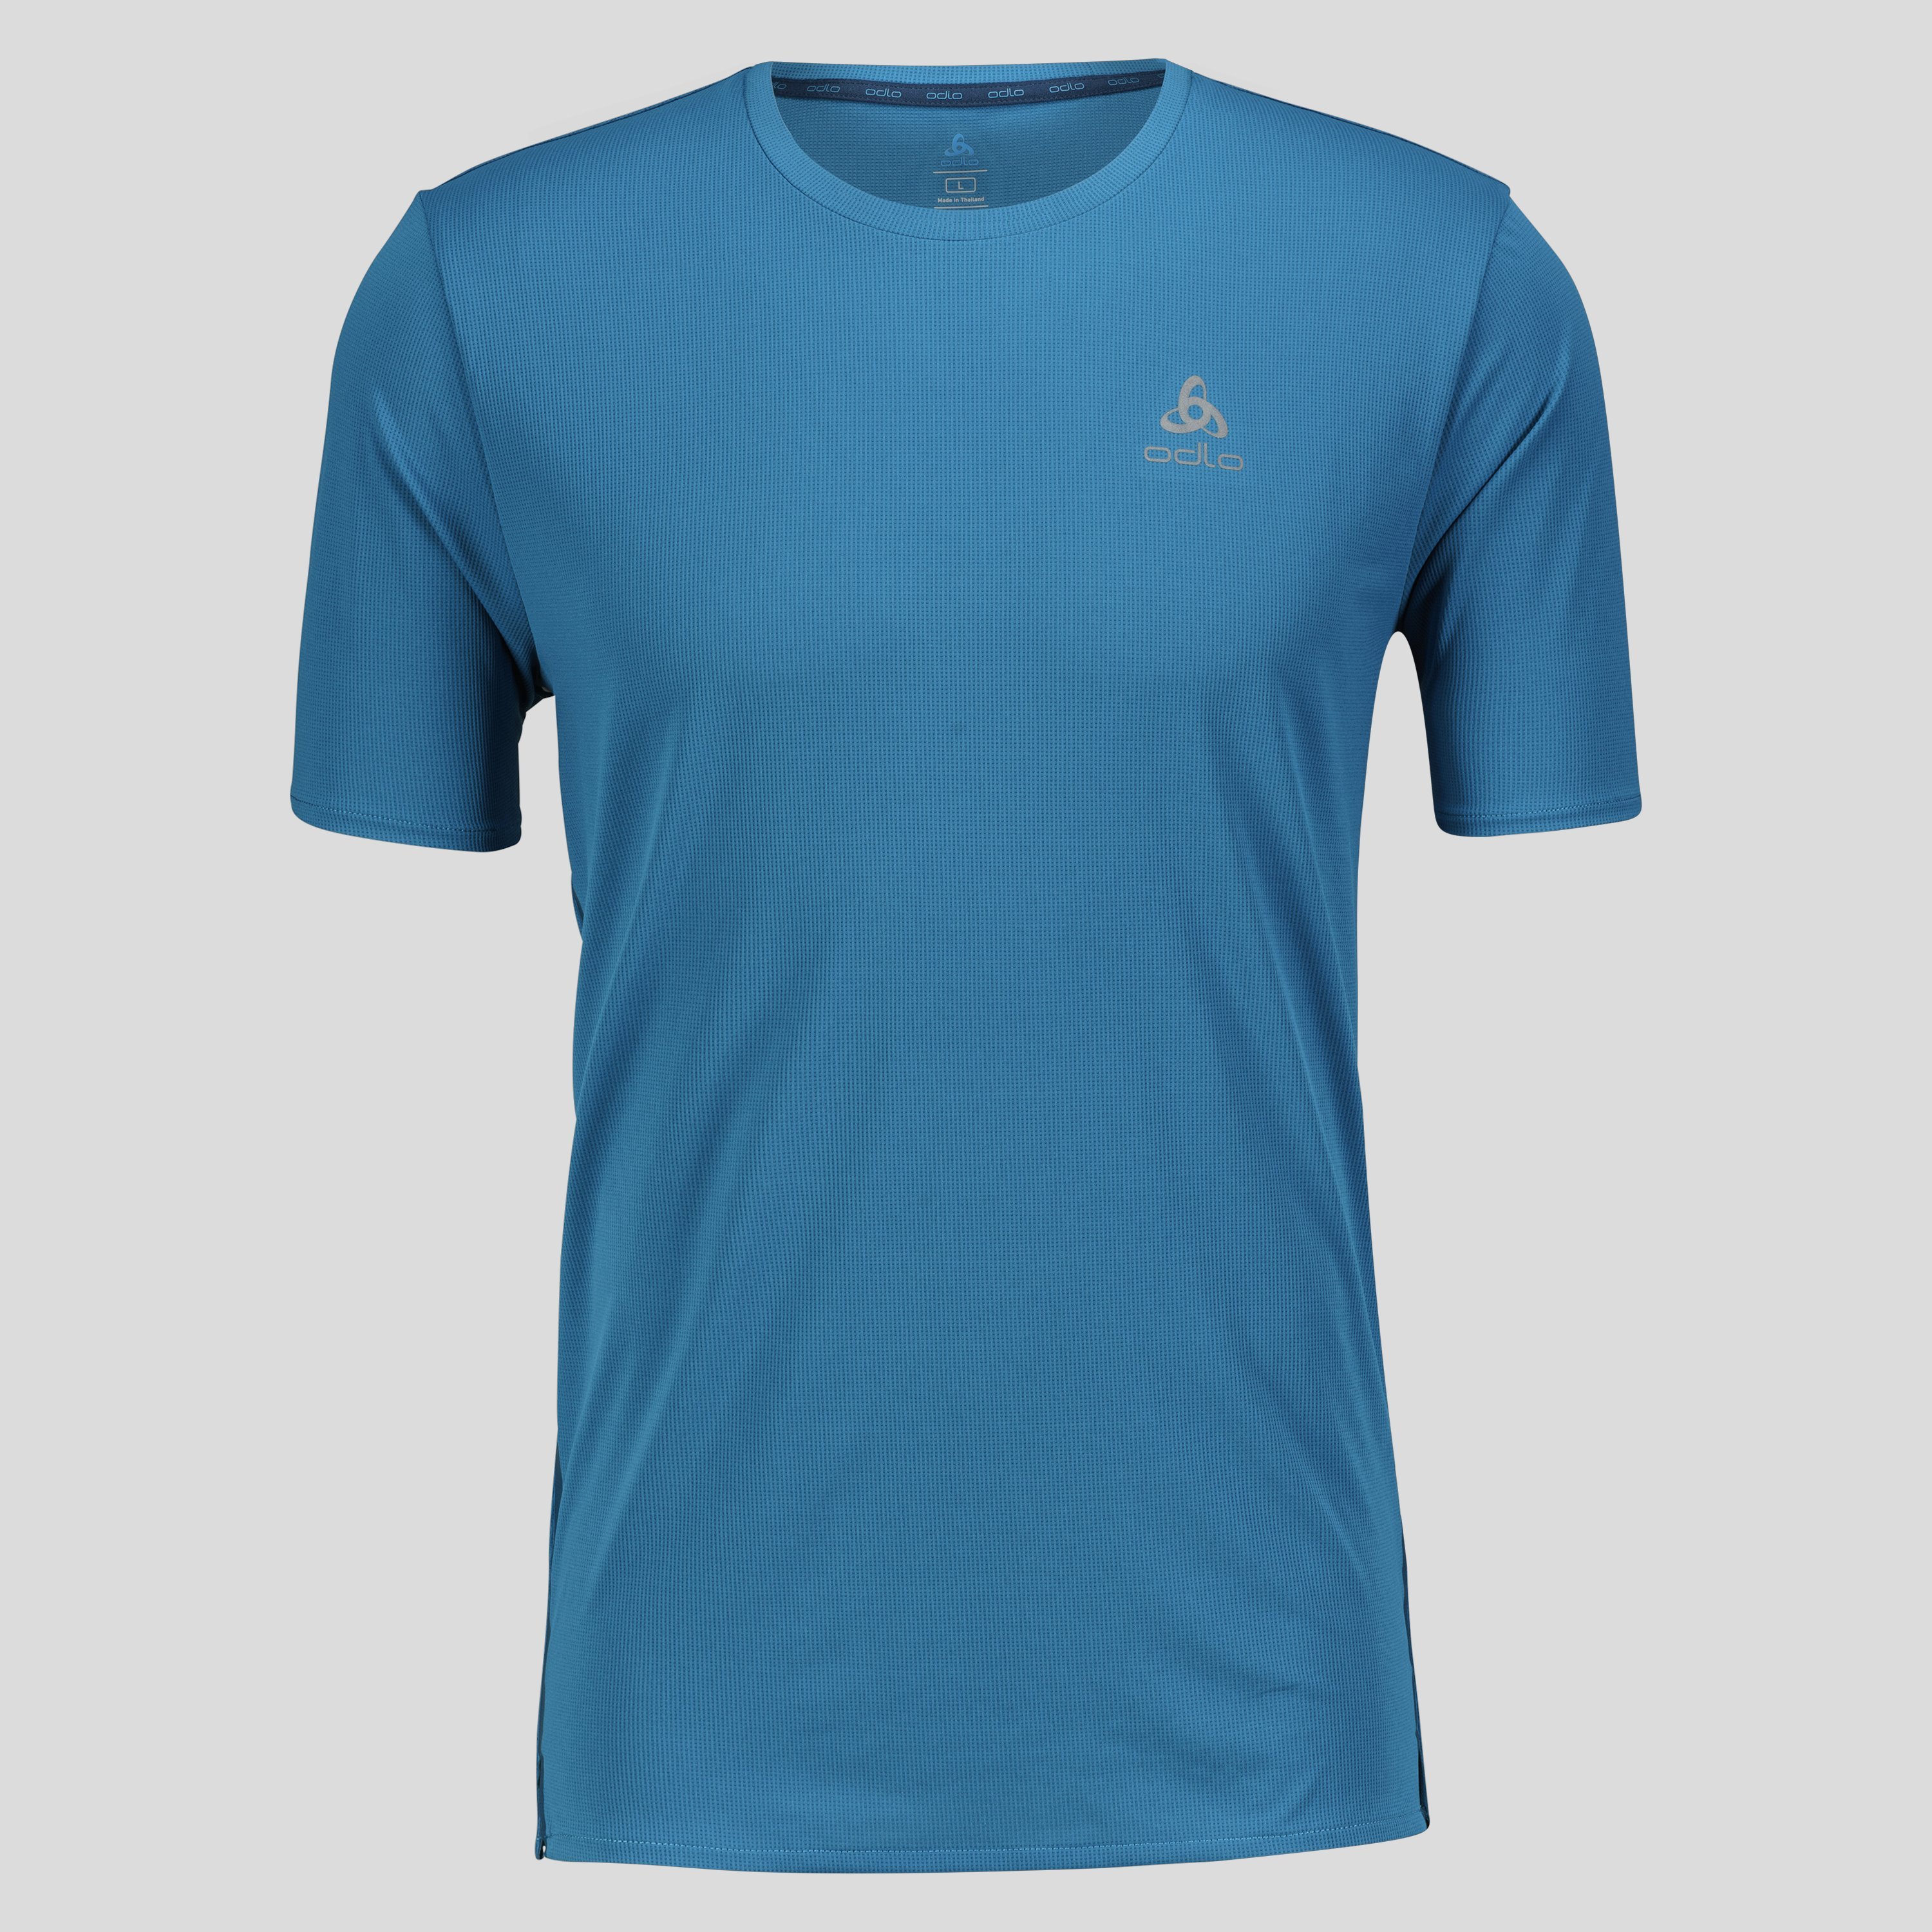 ODLO Zeroweight Chill-Tec T-Shirt für Herren, L, blau